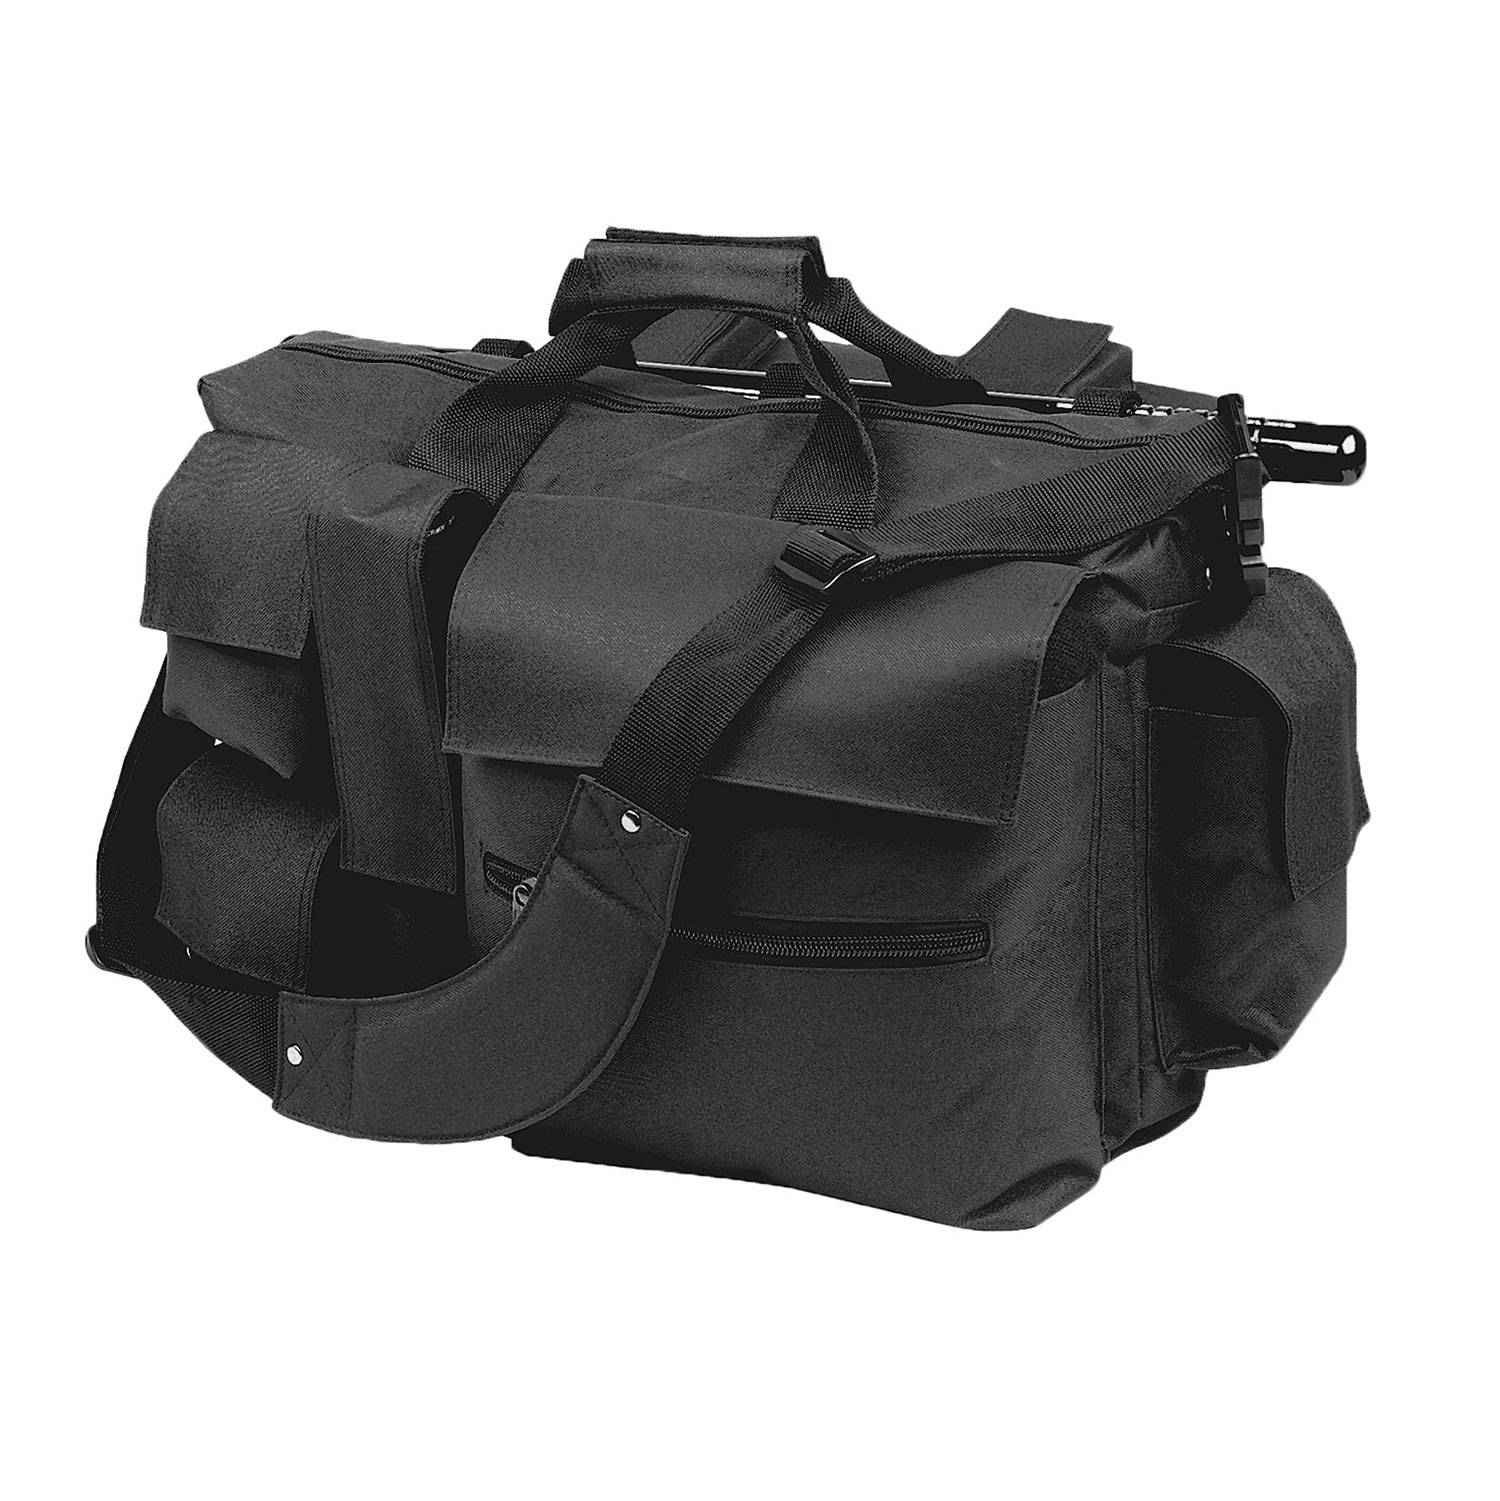 LawPro LAPD Ballistic Nylon War Bag